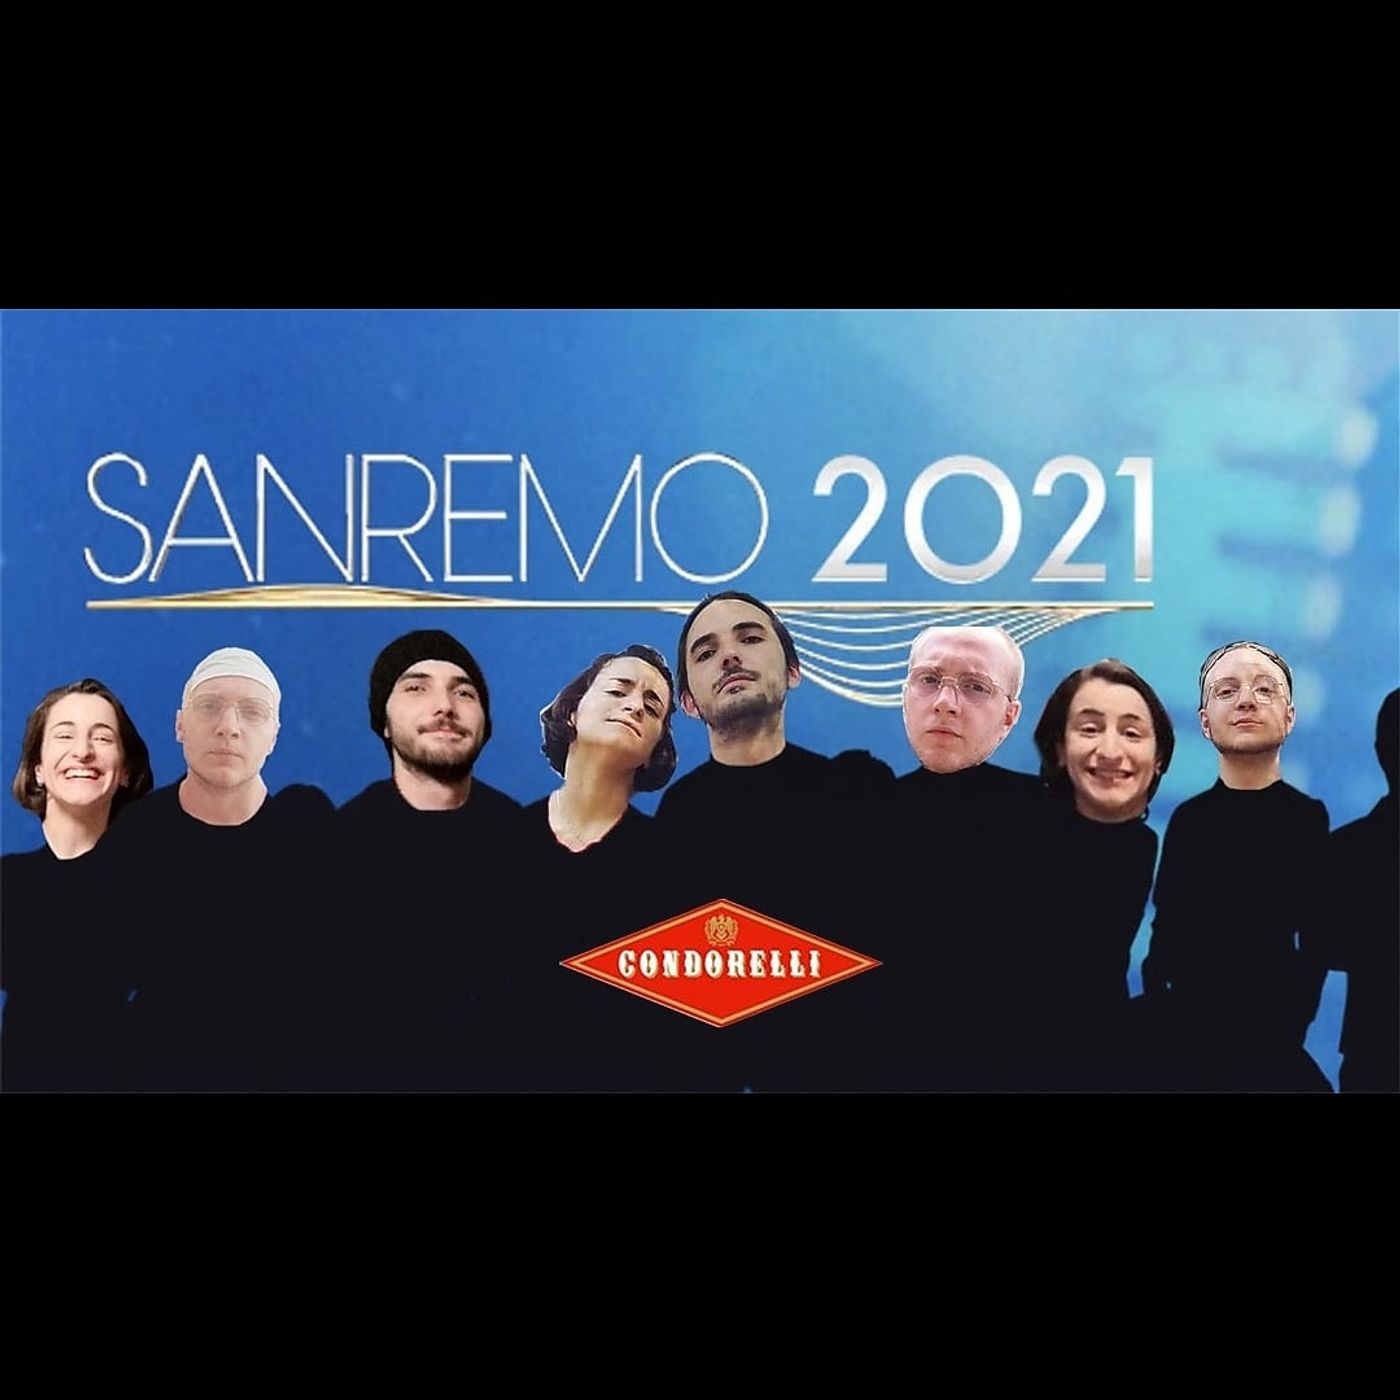 SPECIALE VIGILIA DI NATALE: i Condorelli di Sanremo 2021 - Dillo a Karmadillo - s04e03